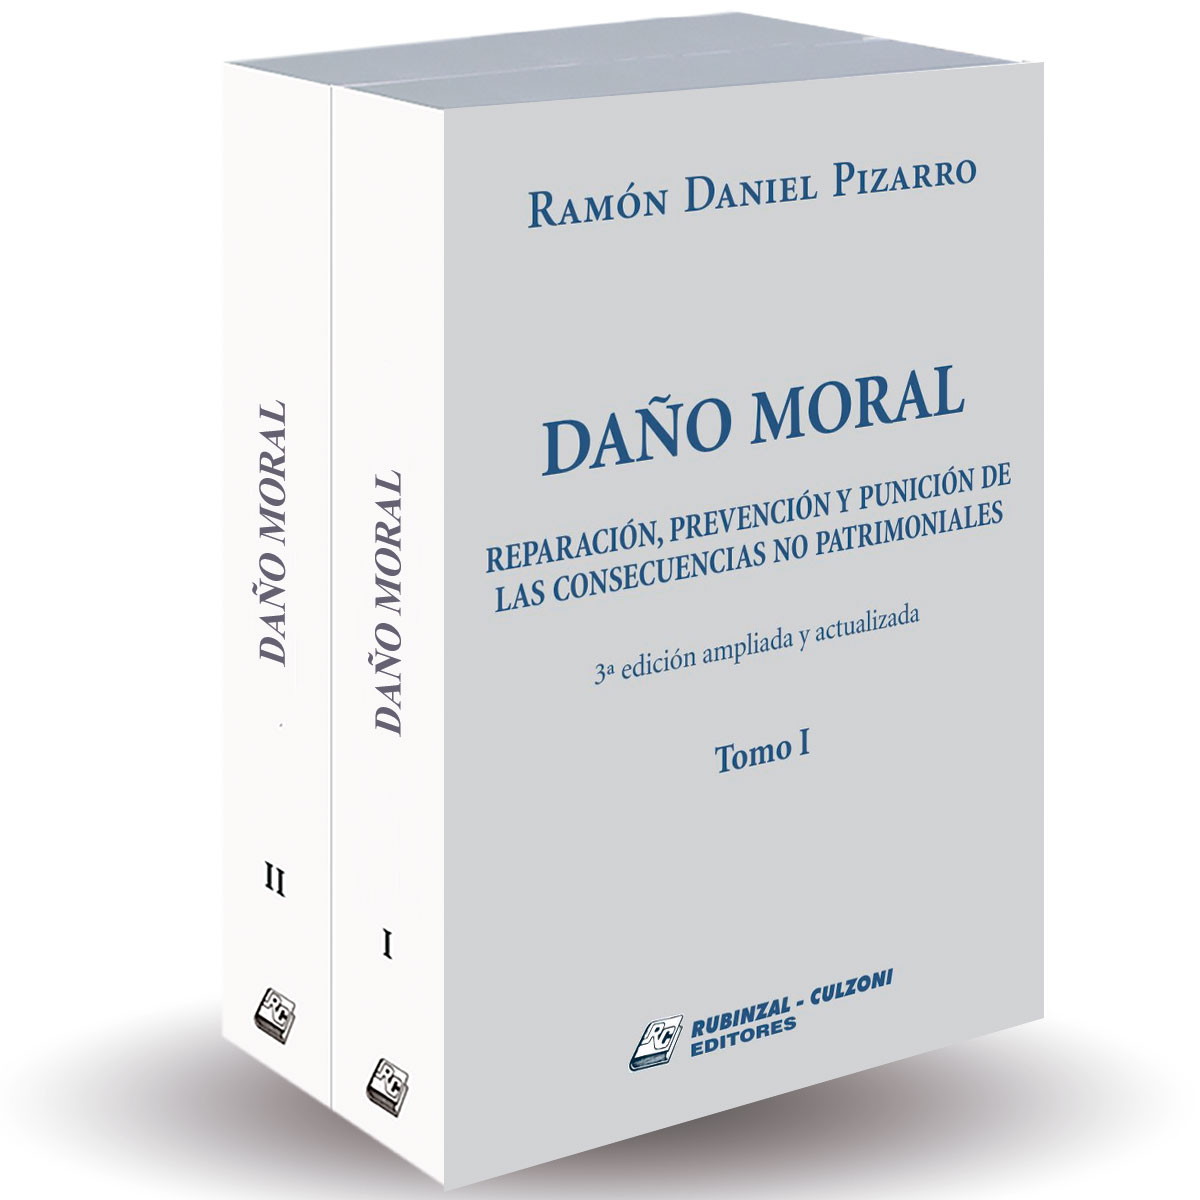 Daño moral - Reparación, prevención y punición de las consecuencias no patrimoniales. 3ª edición ampliada y actualizada